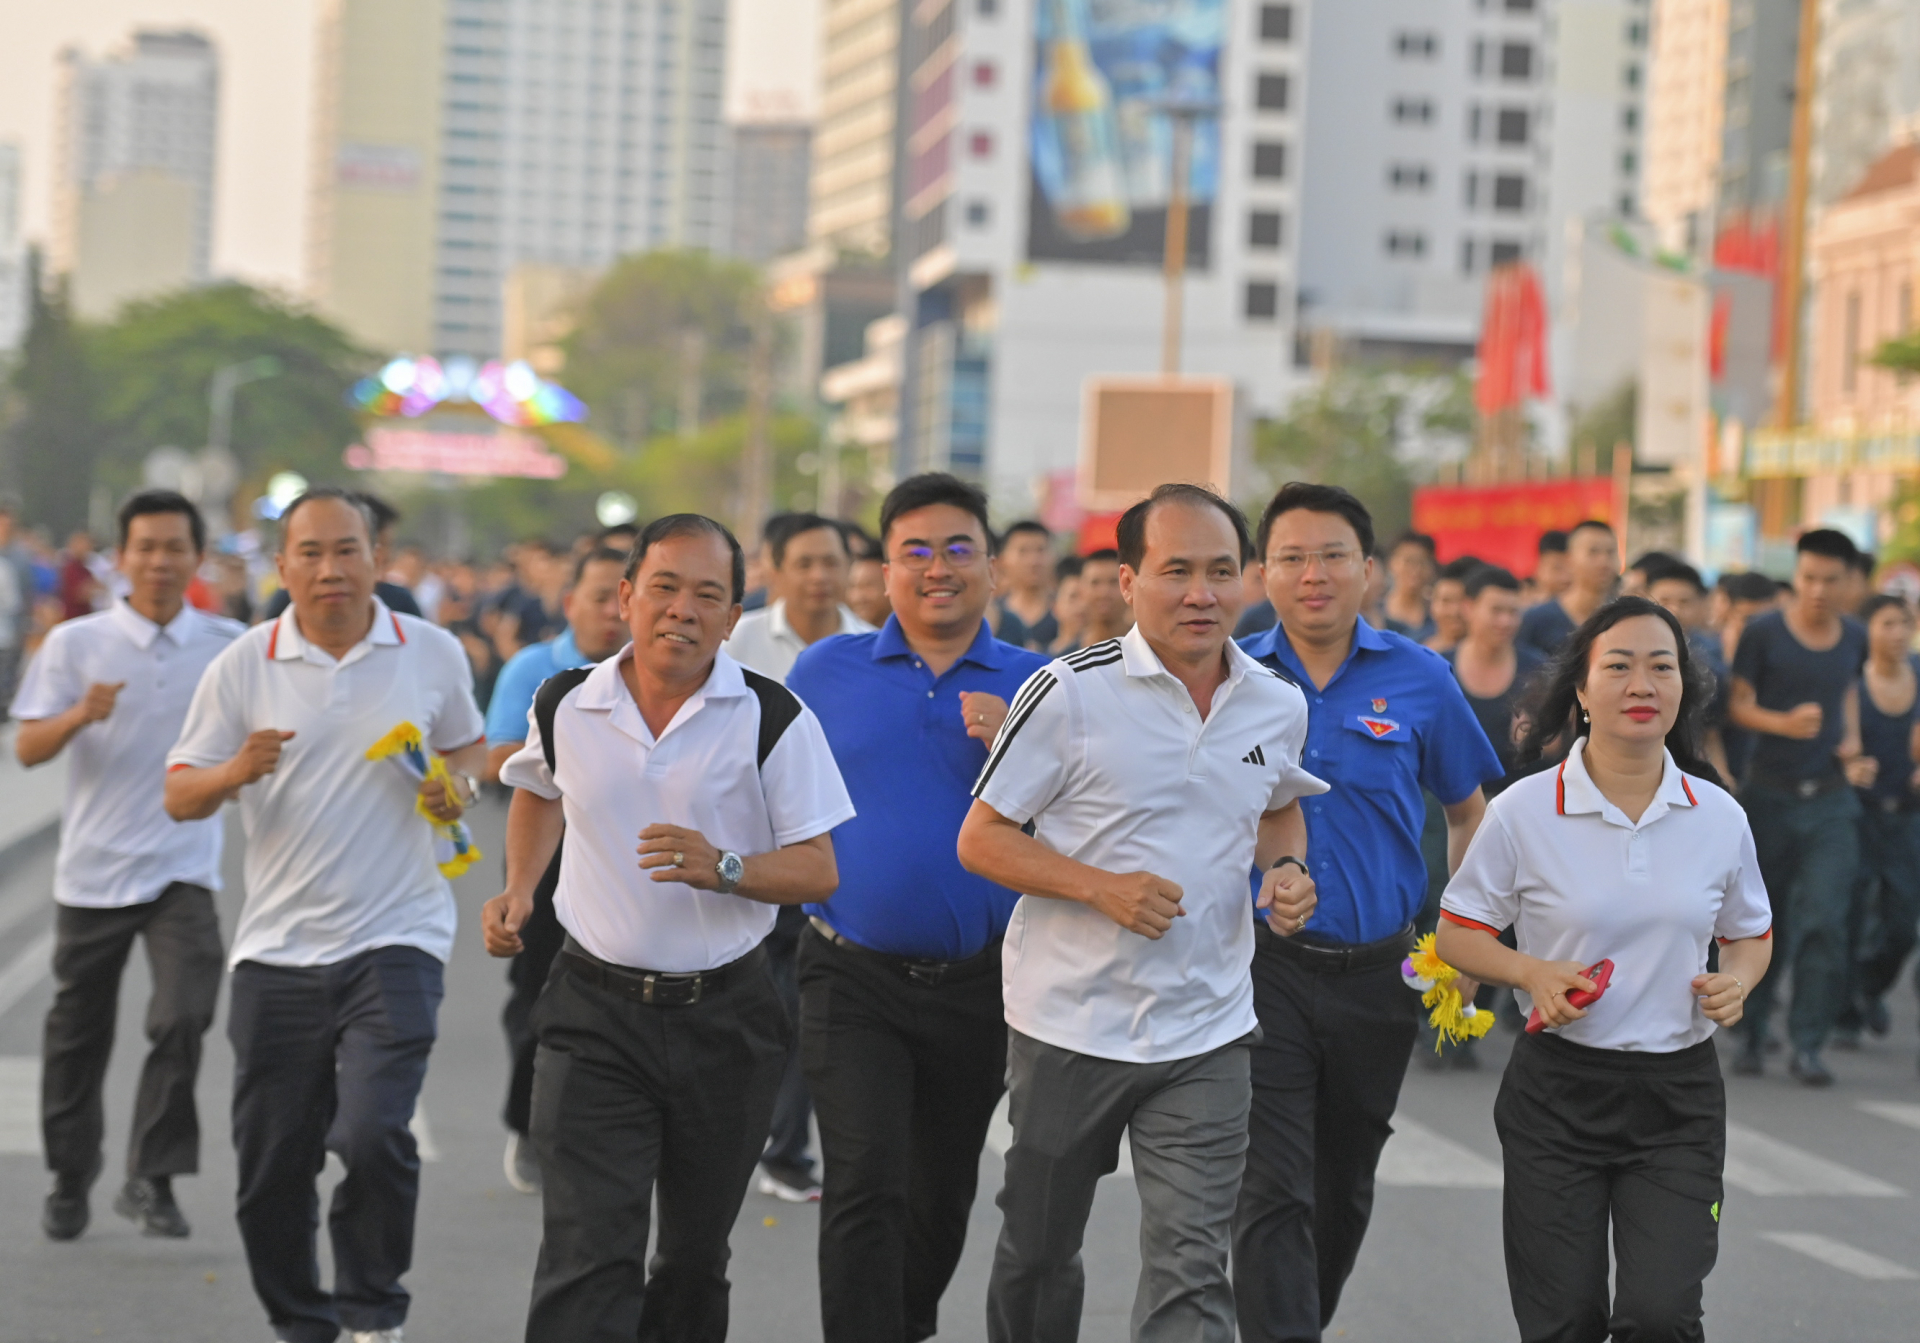 The representatives running

